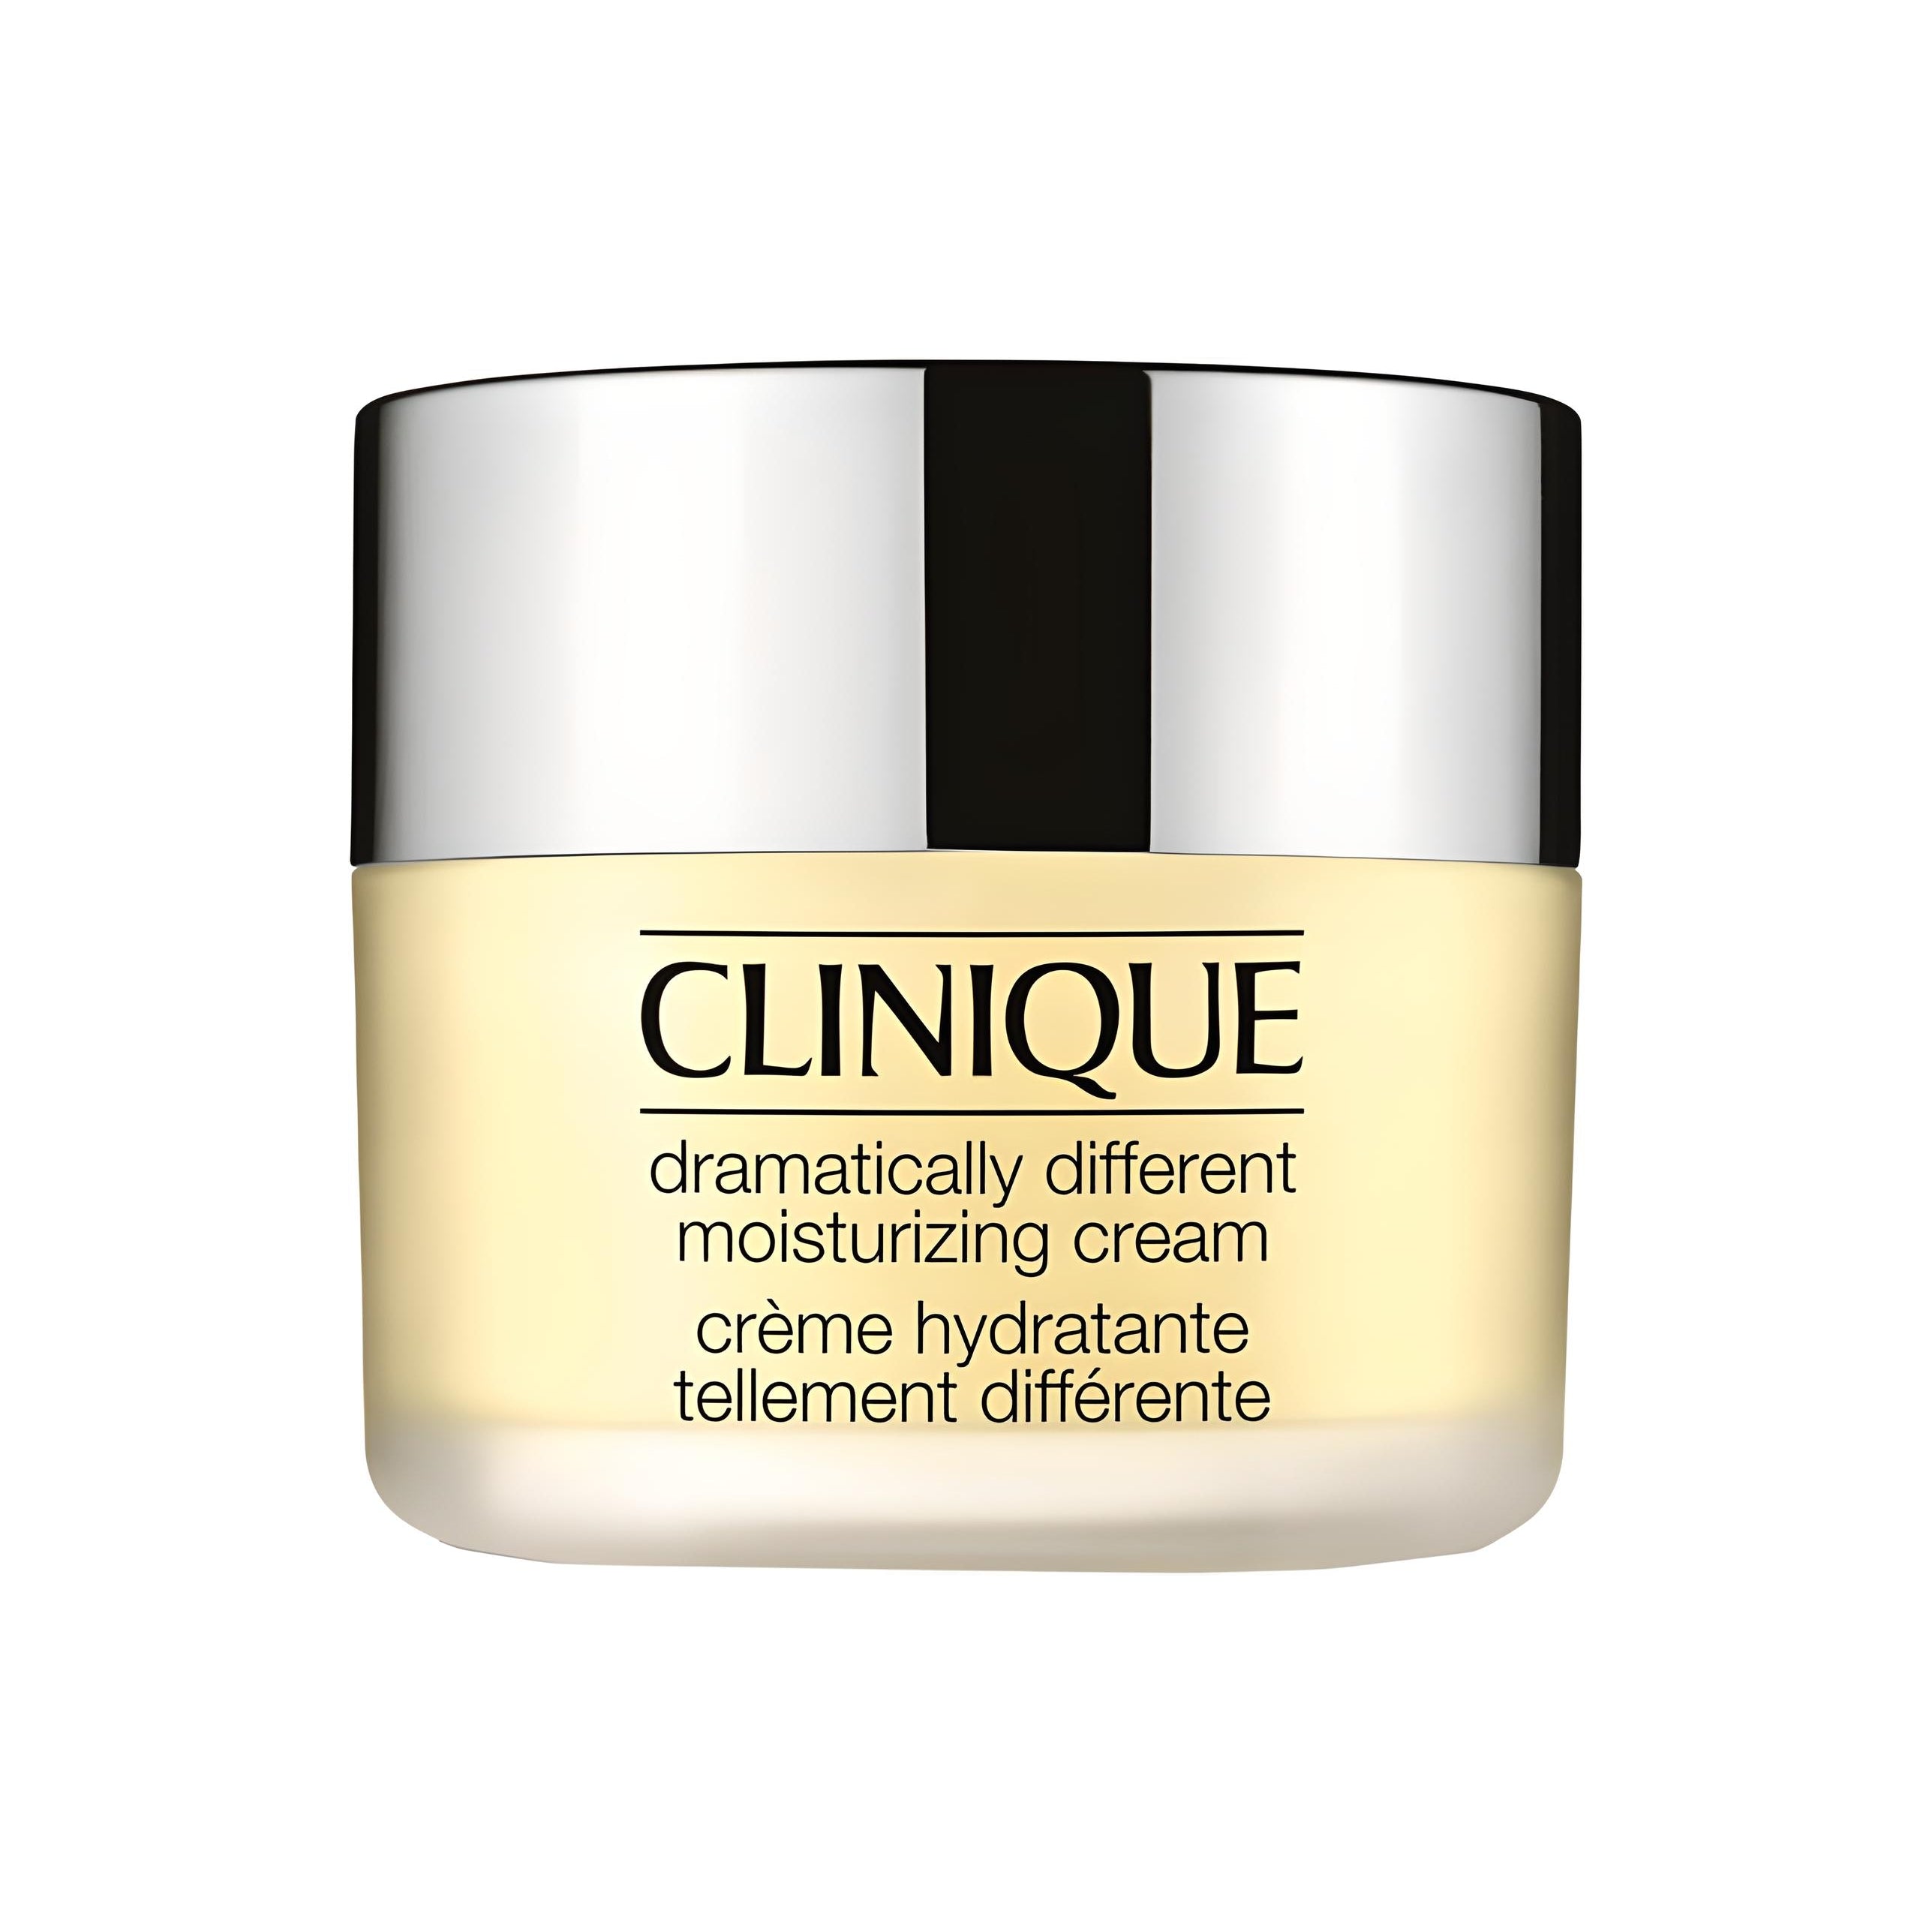 DRAMATICALLY DIFFERENT moisturizing cream Gesichtspflege CLINIQUE   